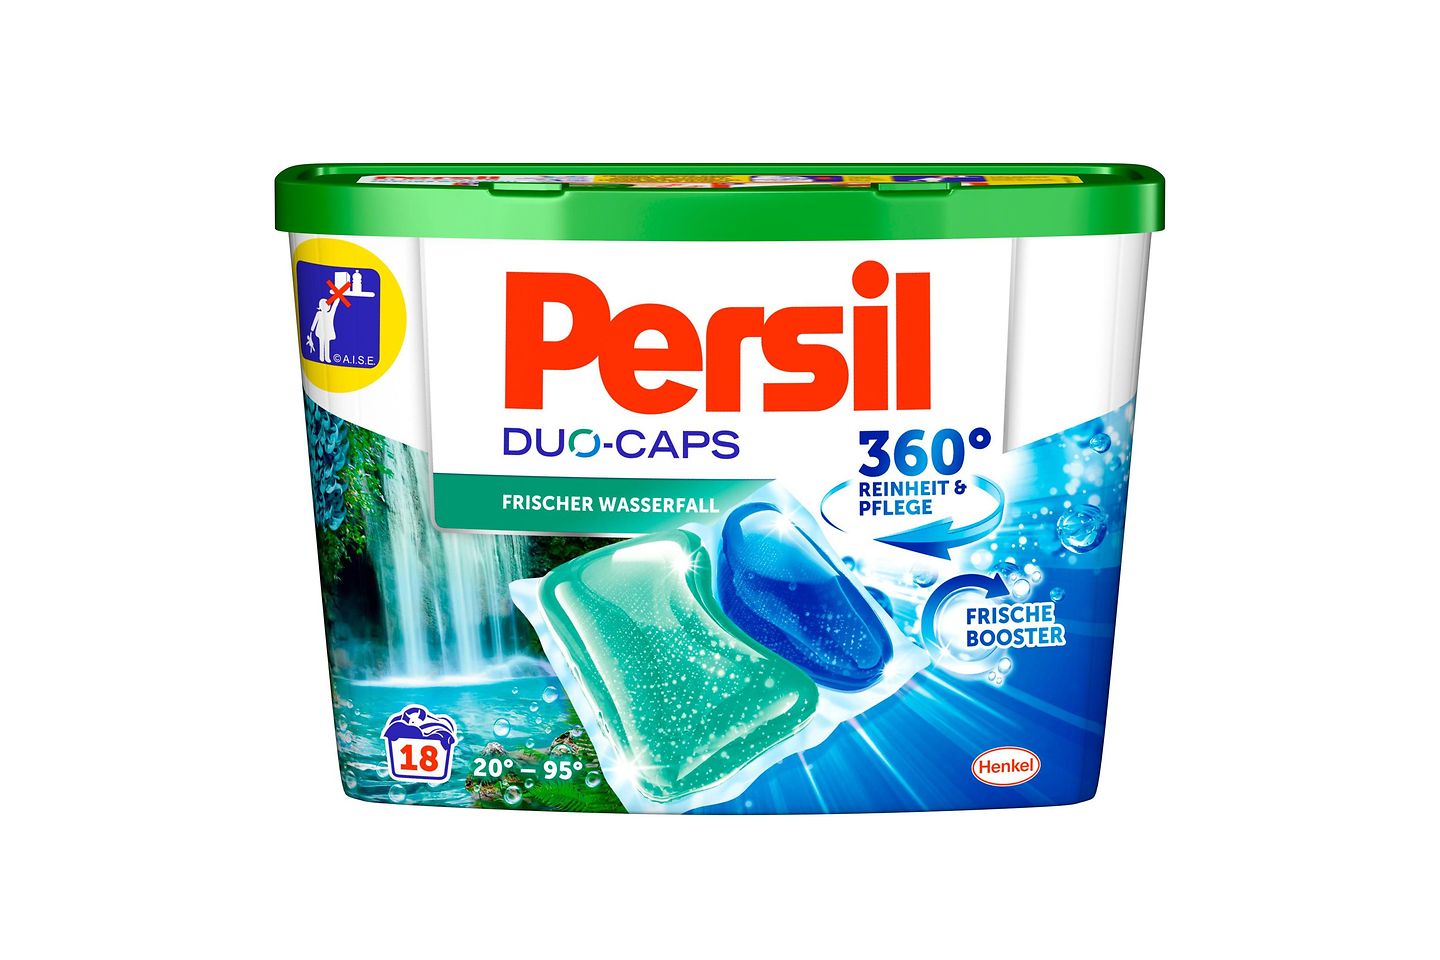 Die neuen Persil Duo-Caps Frischer Wasserfal